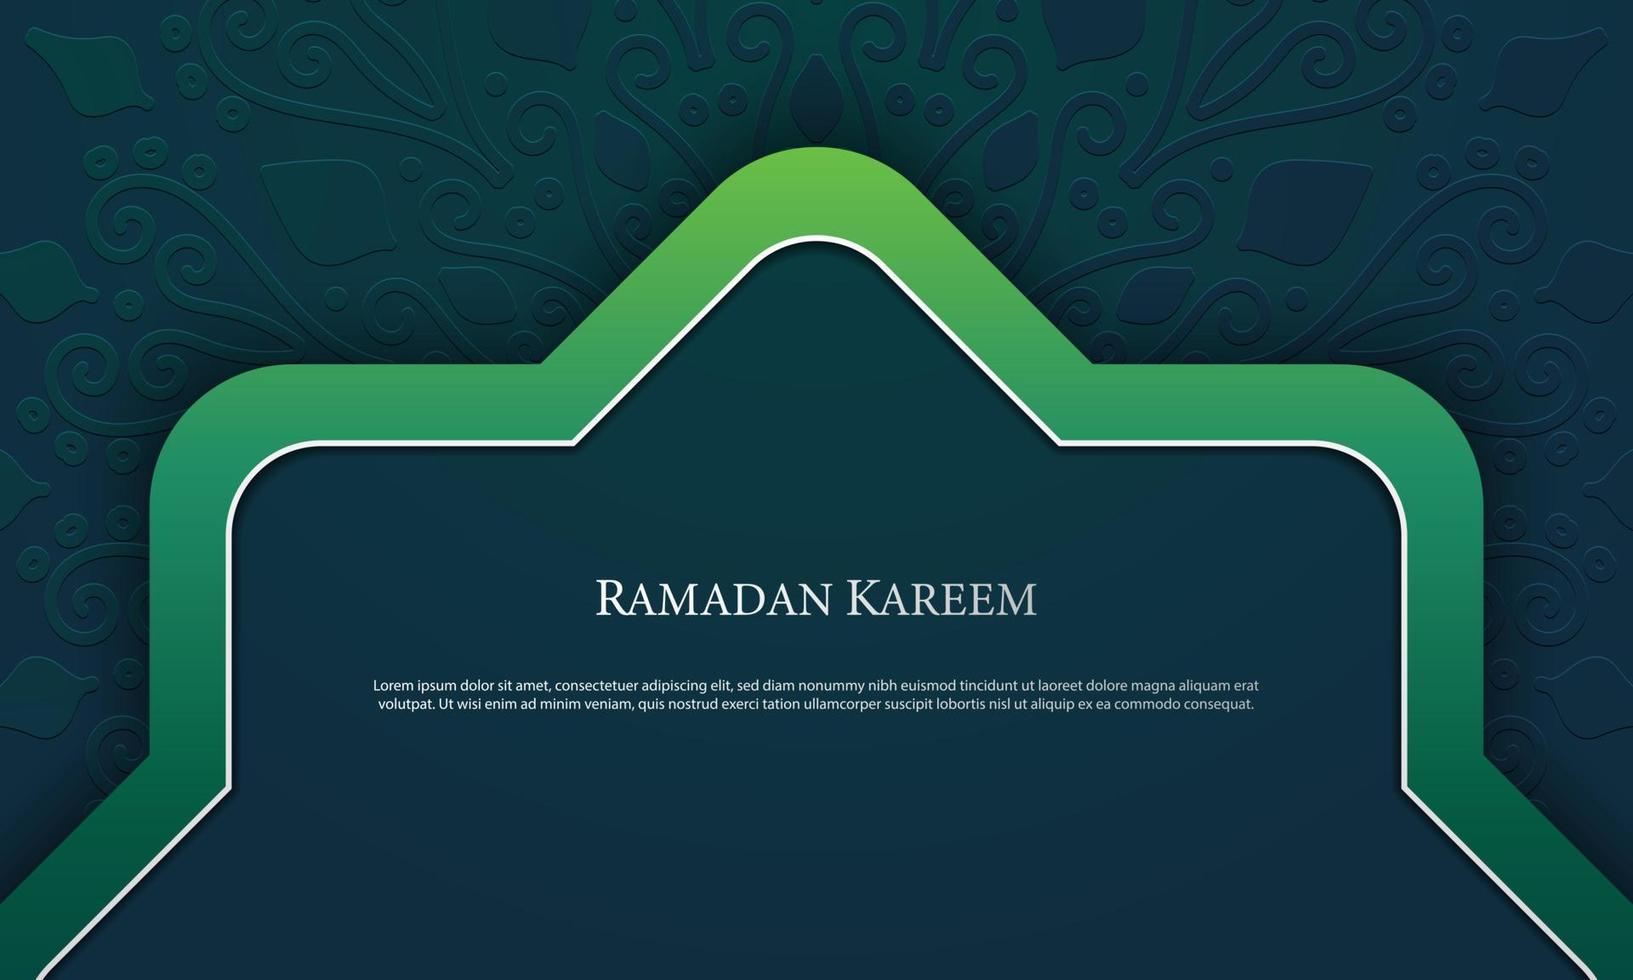 Vektorgrafik von Ramadan Kareem mit grünem Hintergrund. geeignet für Grußkarten, Tapeten und andere. vektor